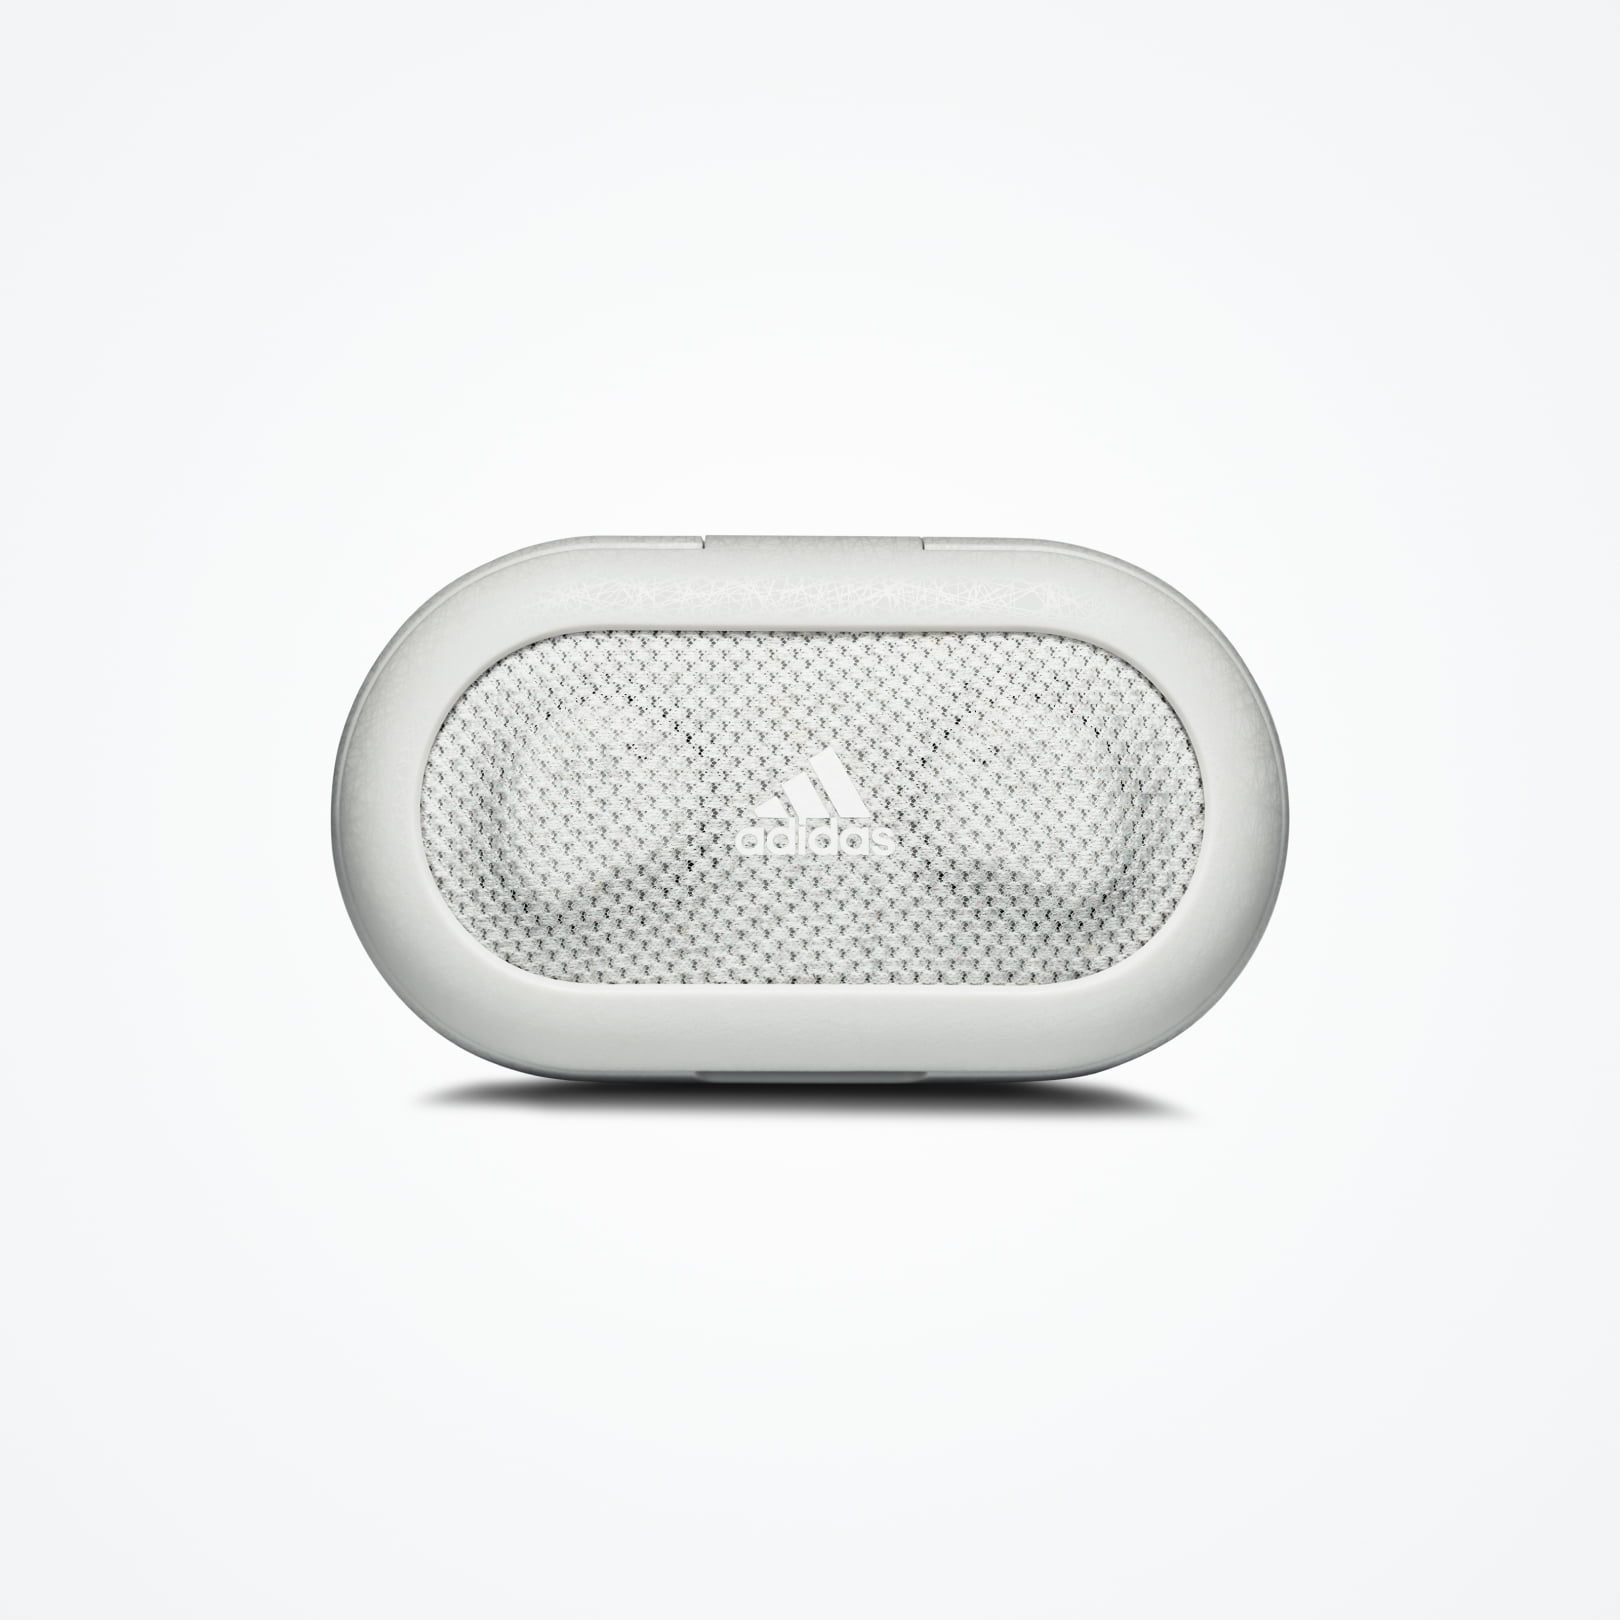 scientist Ecology Quilt FWD-02 Sport True Wireless Earbuds | adidas